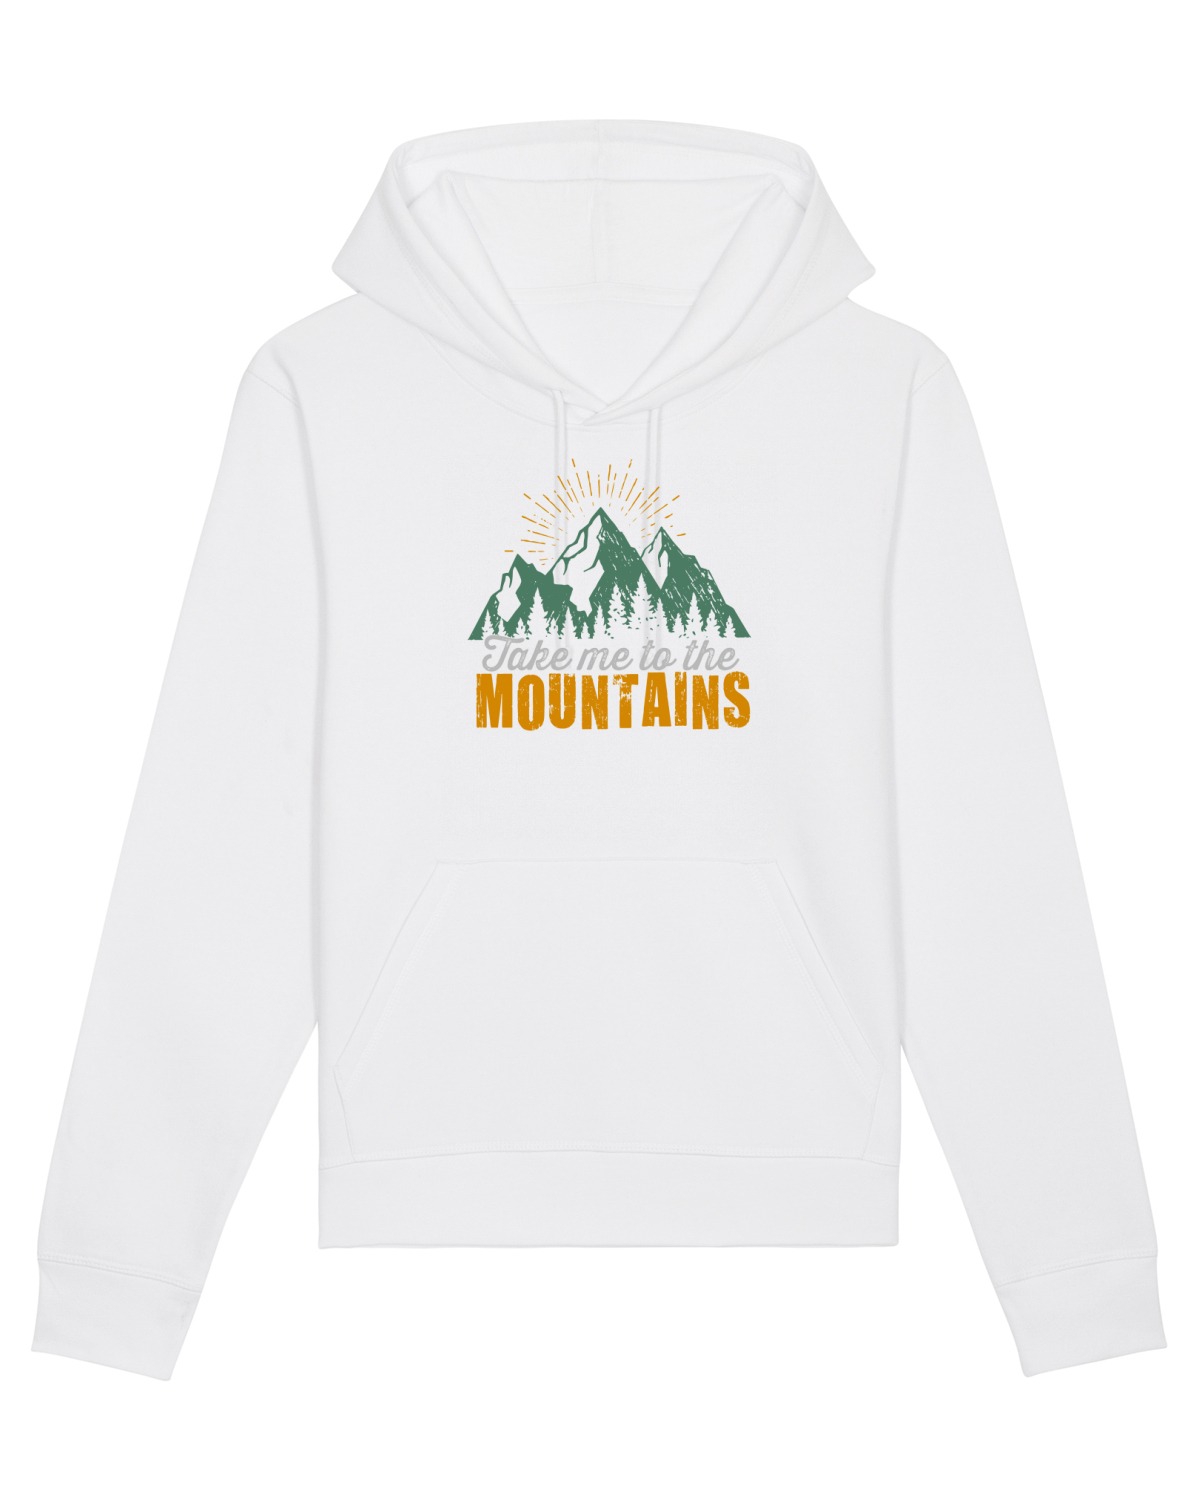 Take me to the mountains